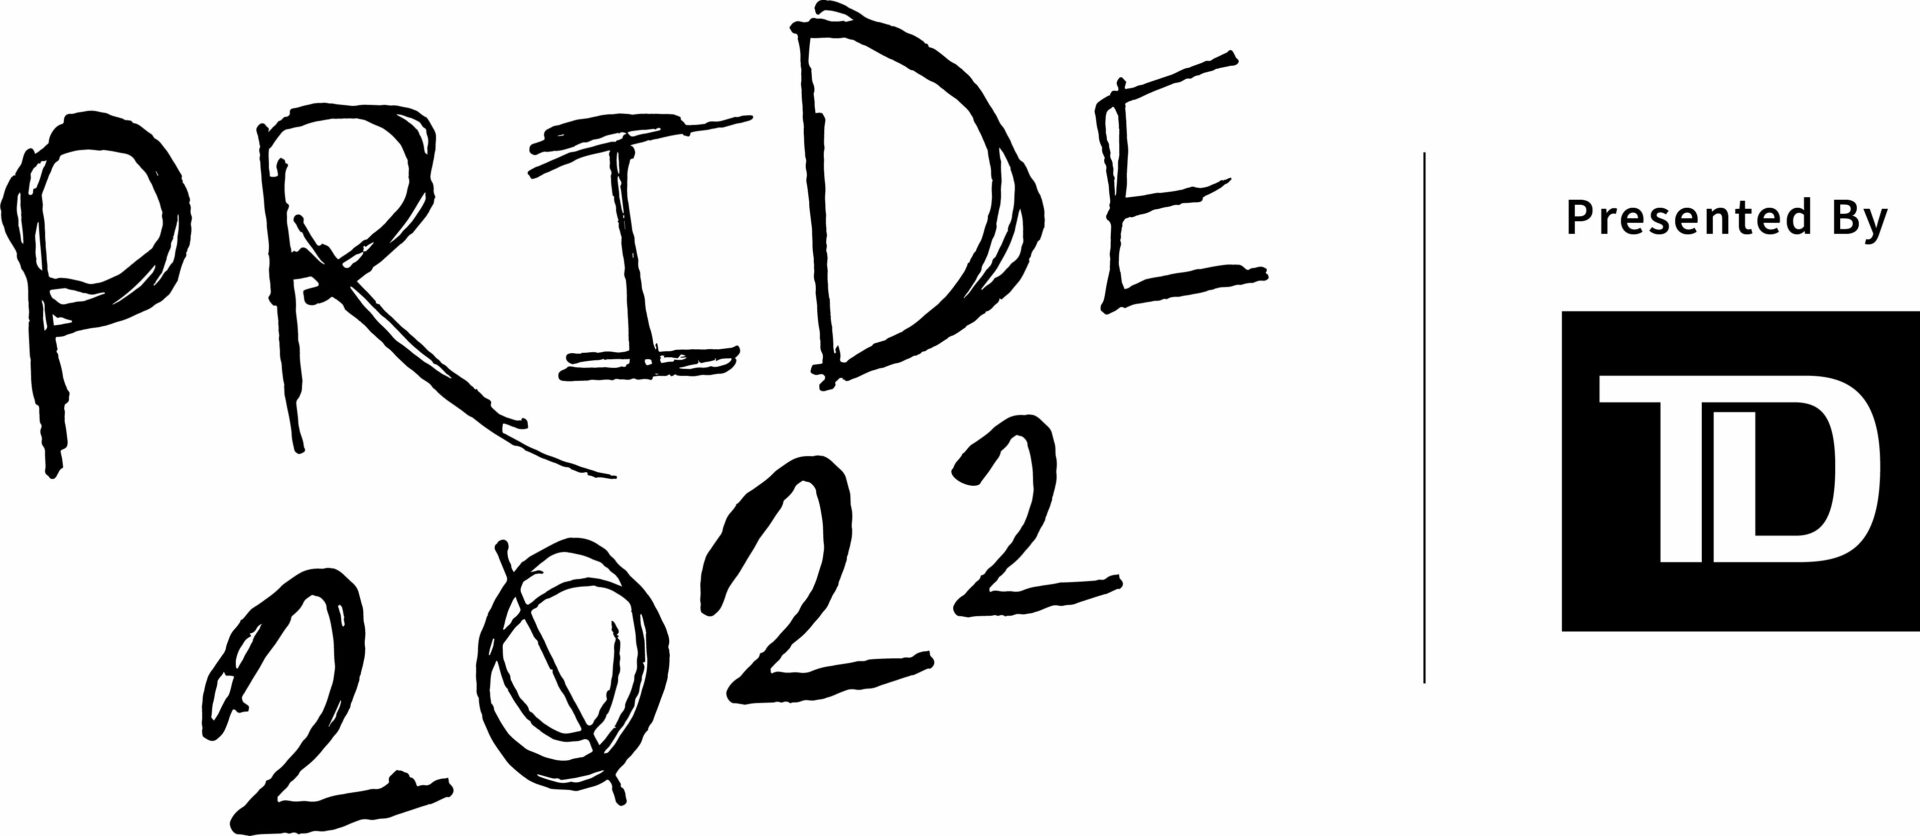 Pride 2022 Wordmark Presented by TD